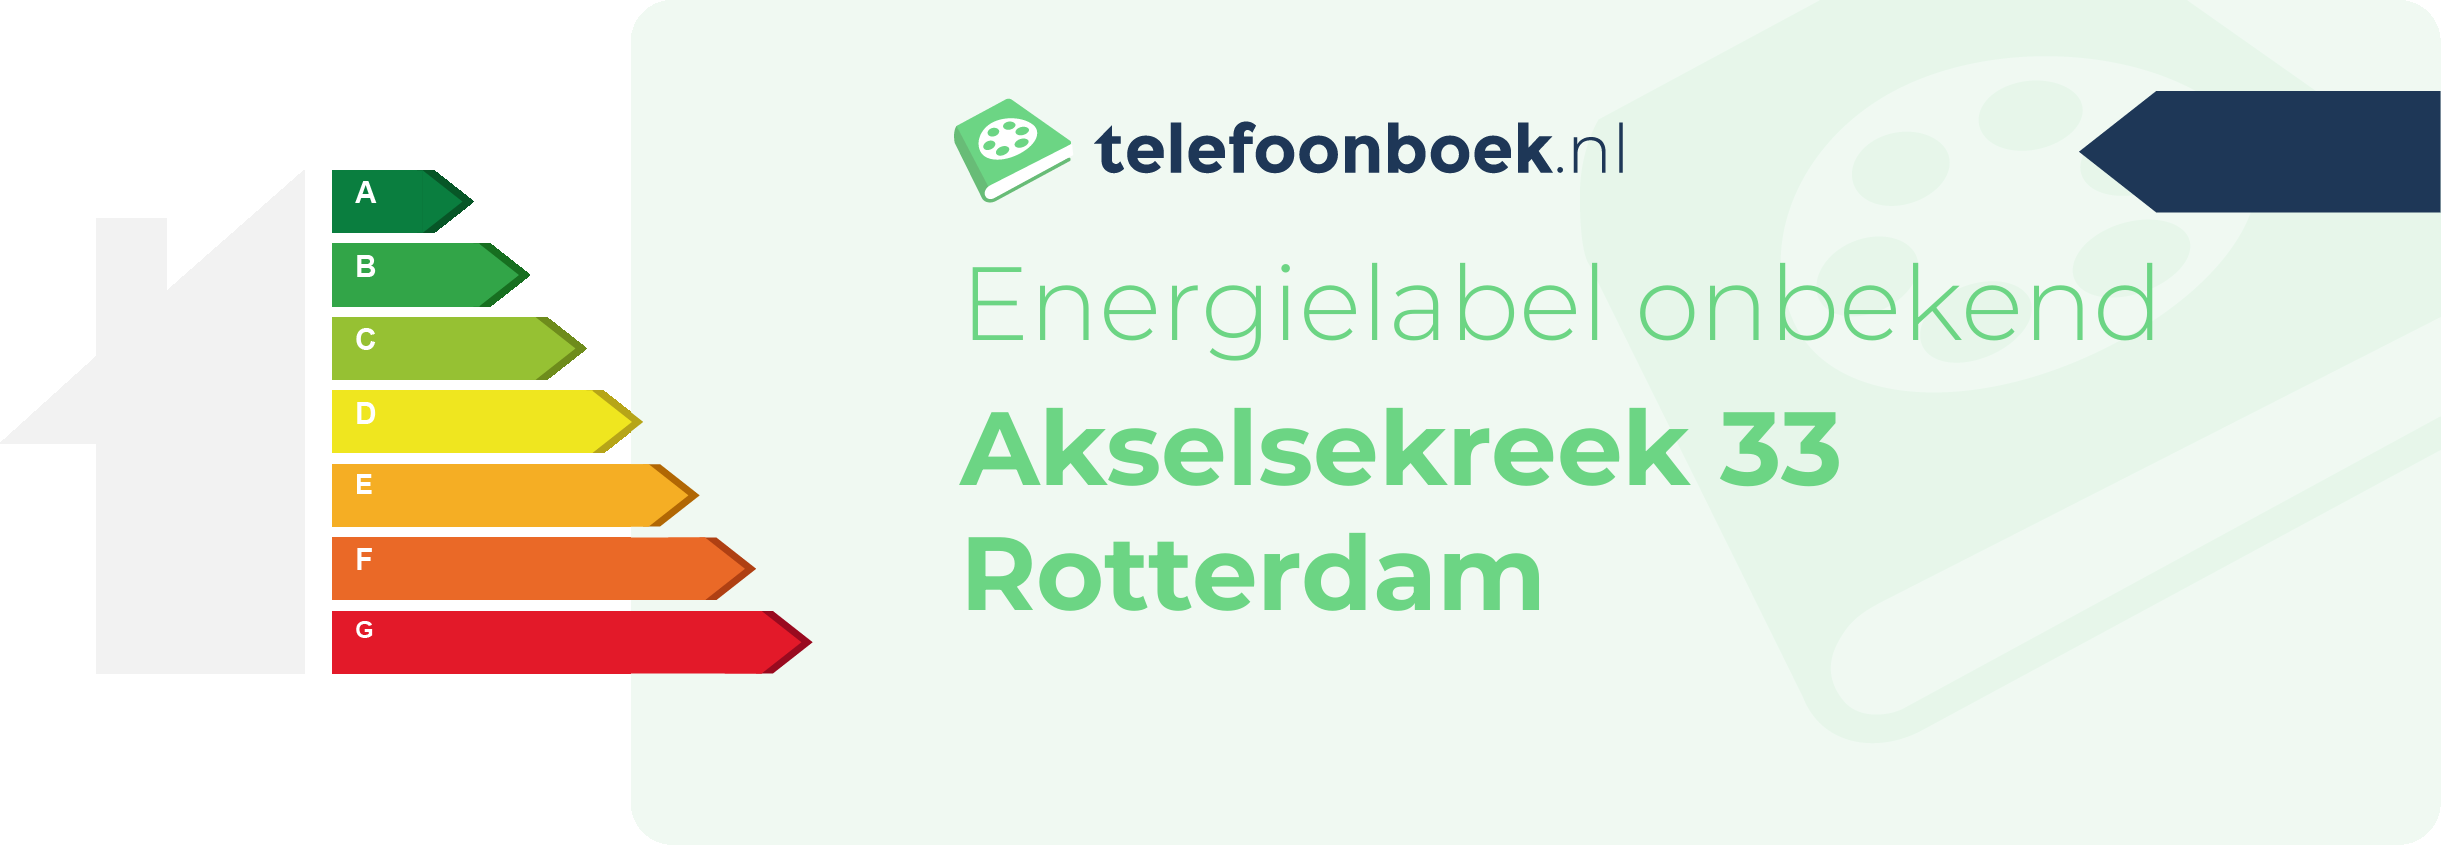 Energielabel Akselsekreek 33 Rotterdam